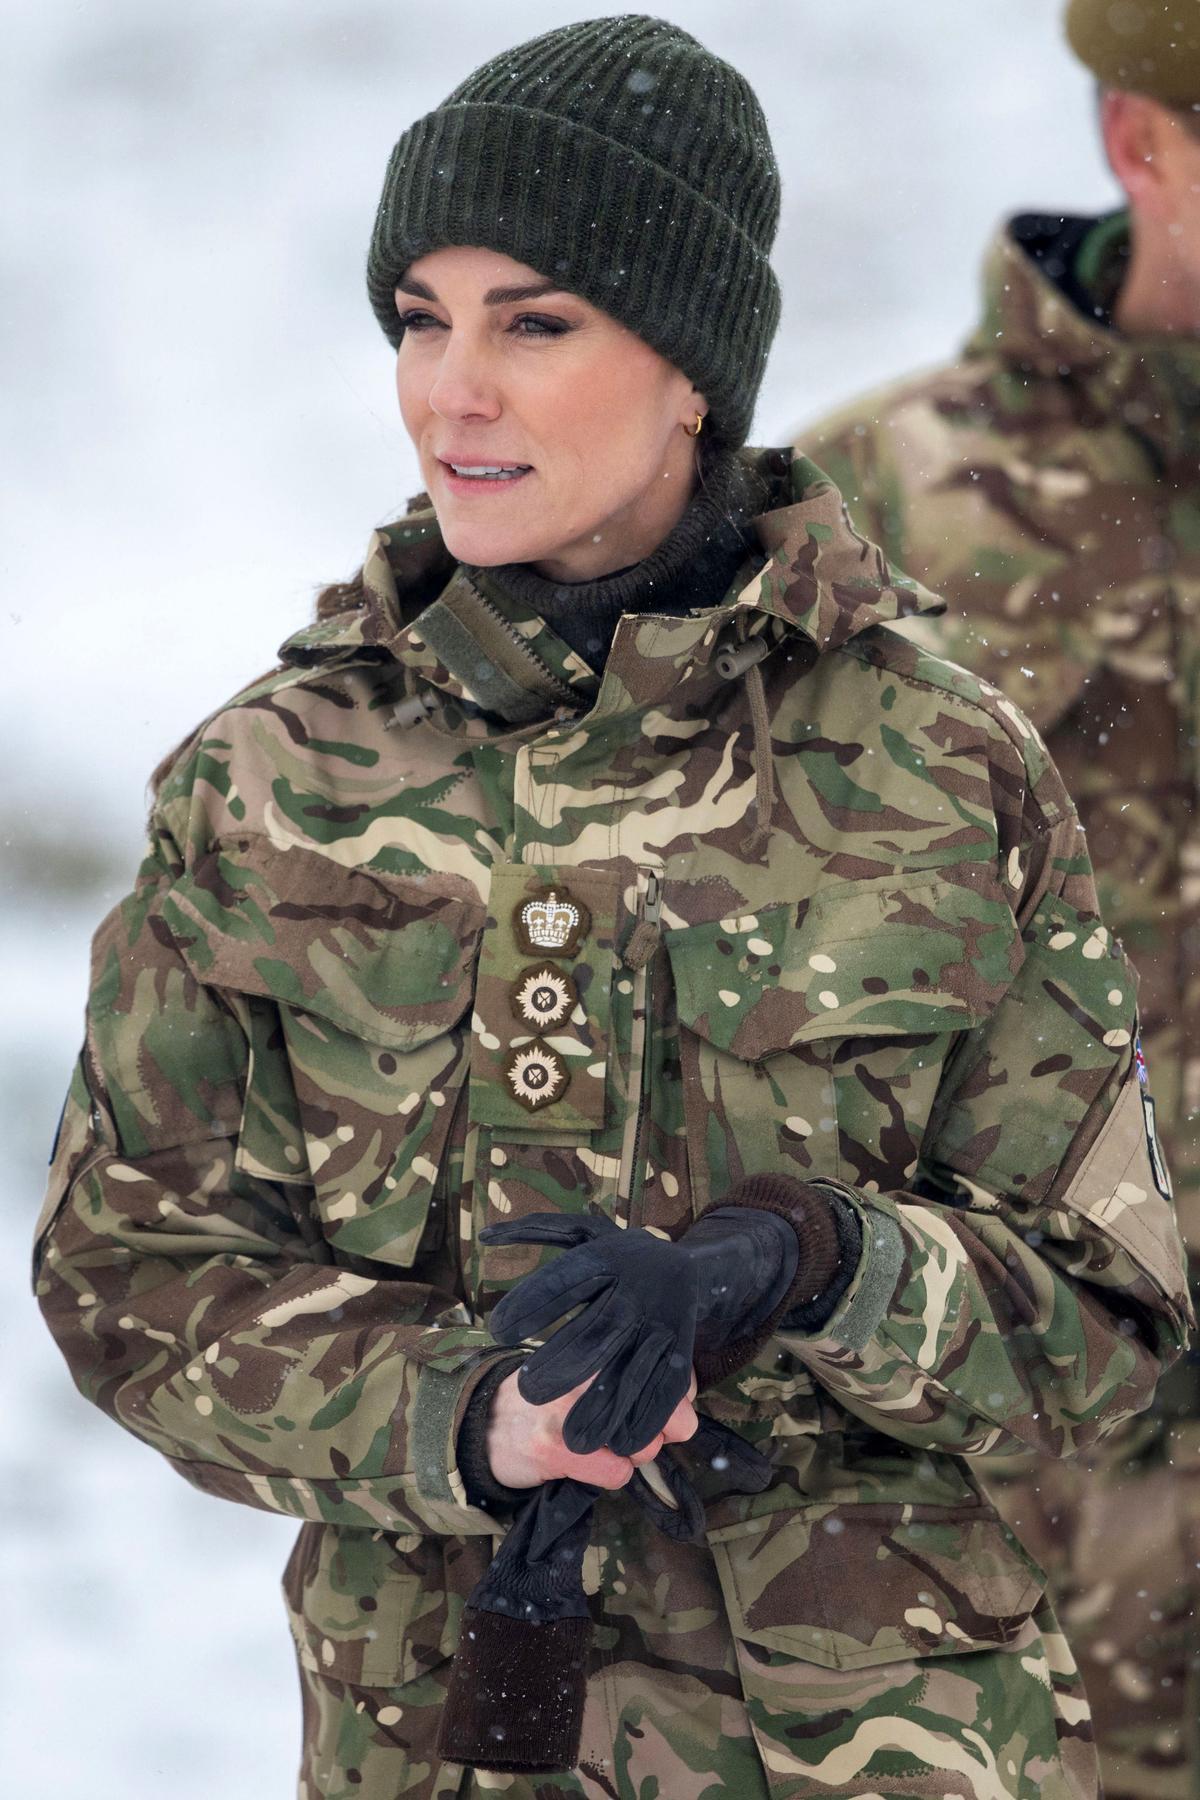 La Princesa de Gales, Catalina practica simulacros de soldados heridos durante su visita al 1er Batallón de Guardias Irlandeses en un ejercicio de entrenamiento cerca de Salisbury, sur de Inglaterra, el 8 de marzo de 2023